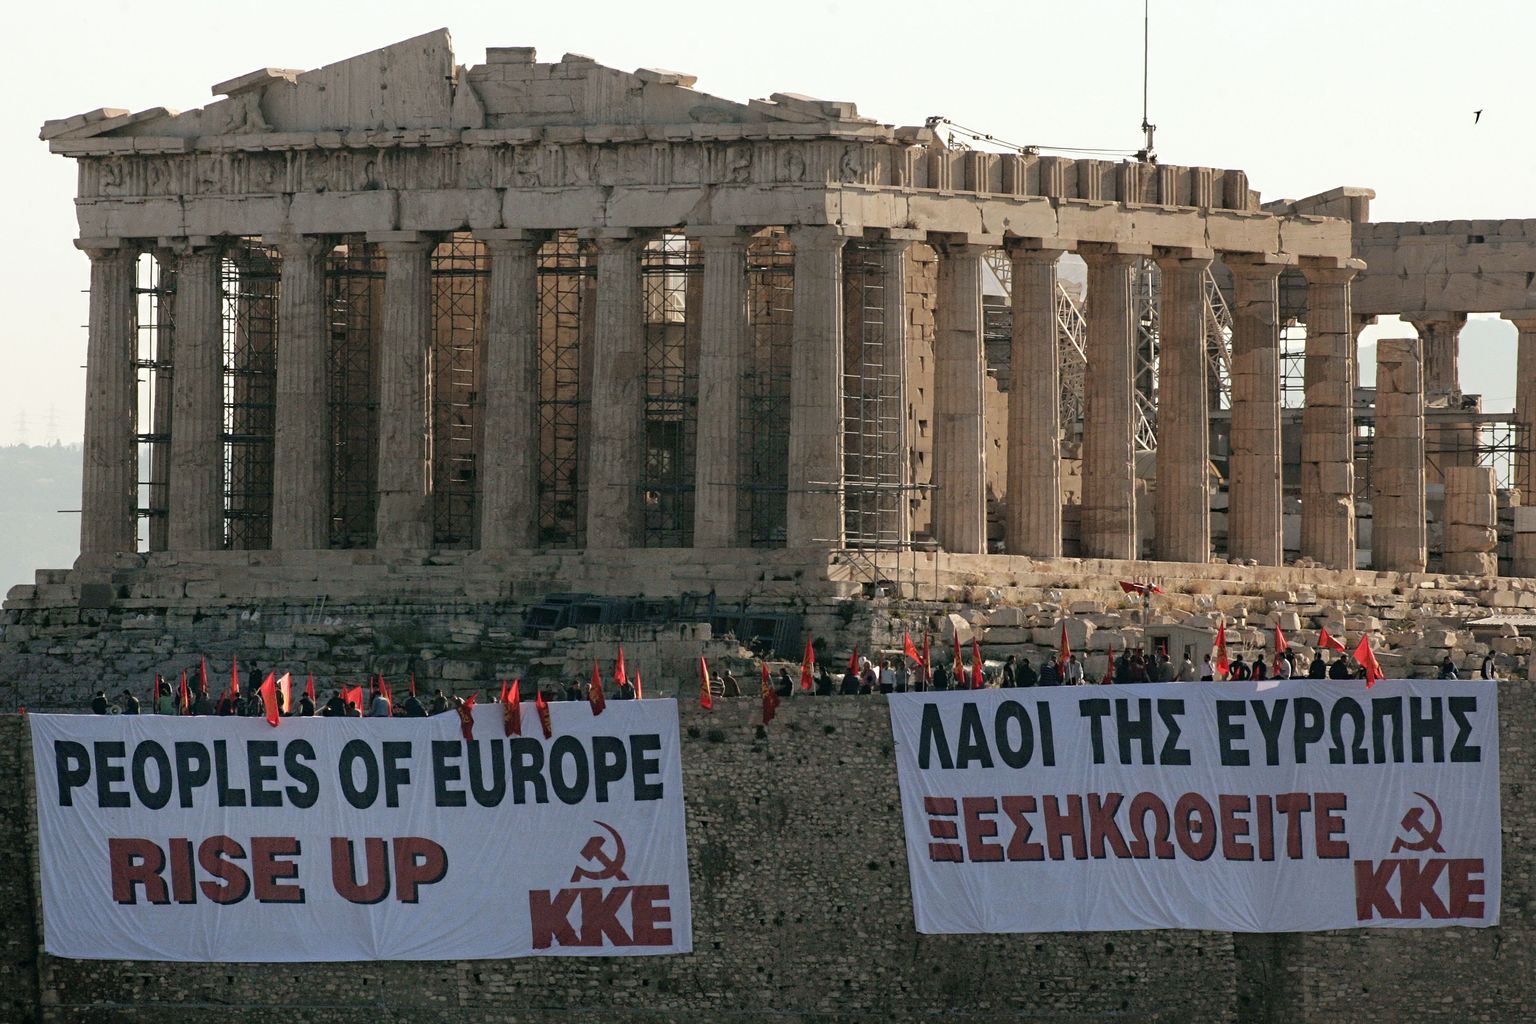 Kreeka kommunistliku partei plakatid Ateena akropoli ees. Plakatid kutsuvad Euroopa rahvaid ülestõusule.